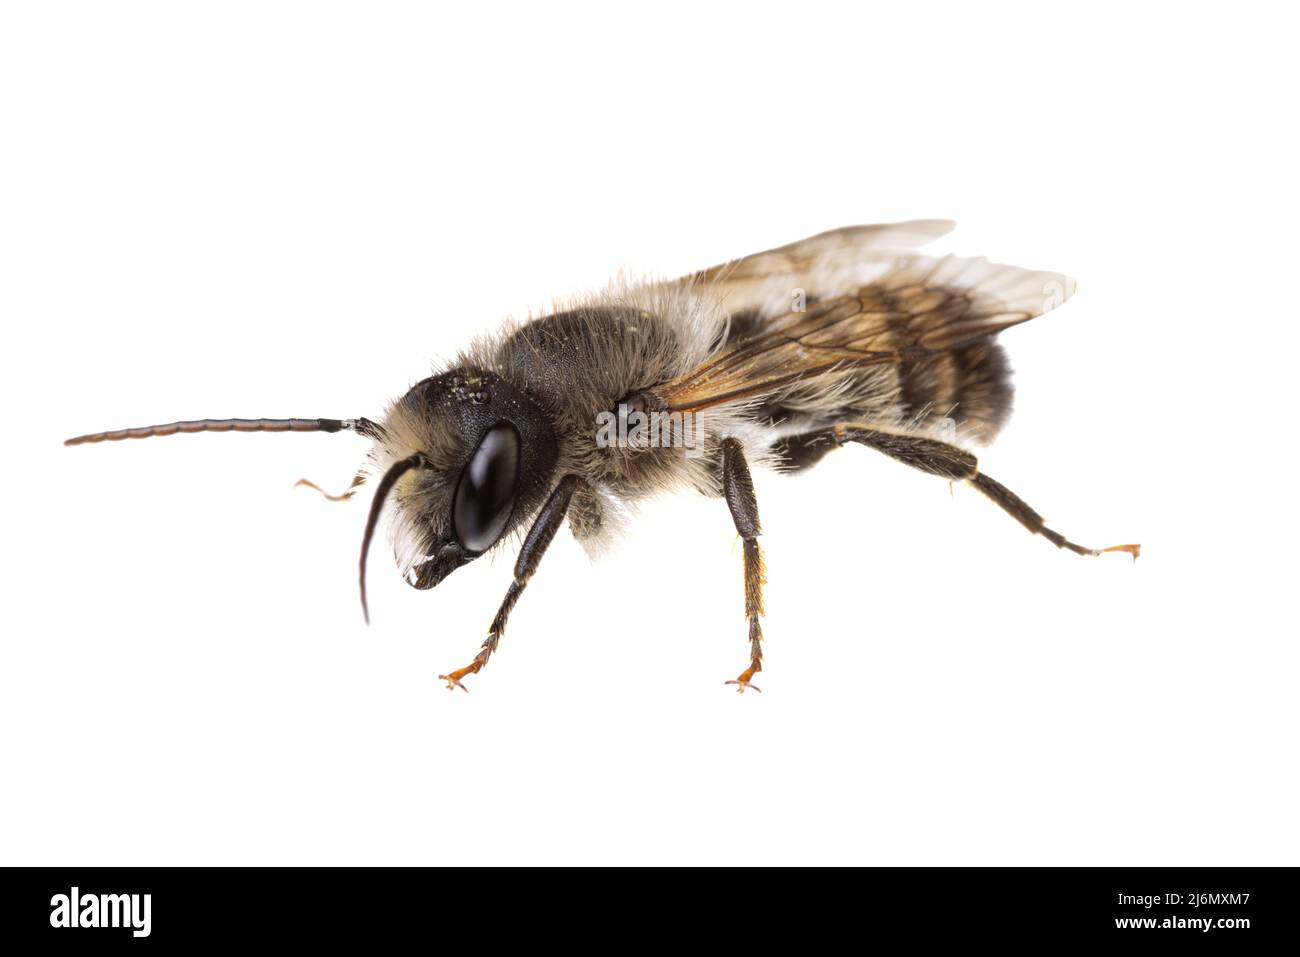 Insetti d'europa - api: Vista laterale macro di maschio Osmia bicornis rosso Mason ape (tedesco Rote Mauerbiene) isolato su sfondo bianco Foto Stock